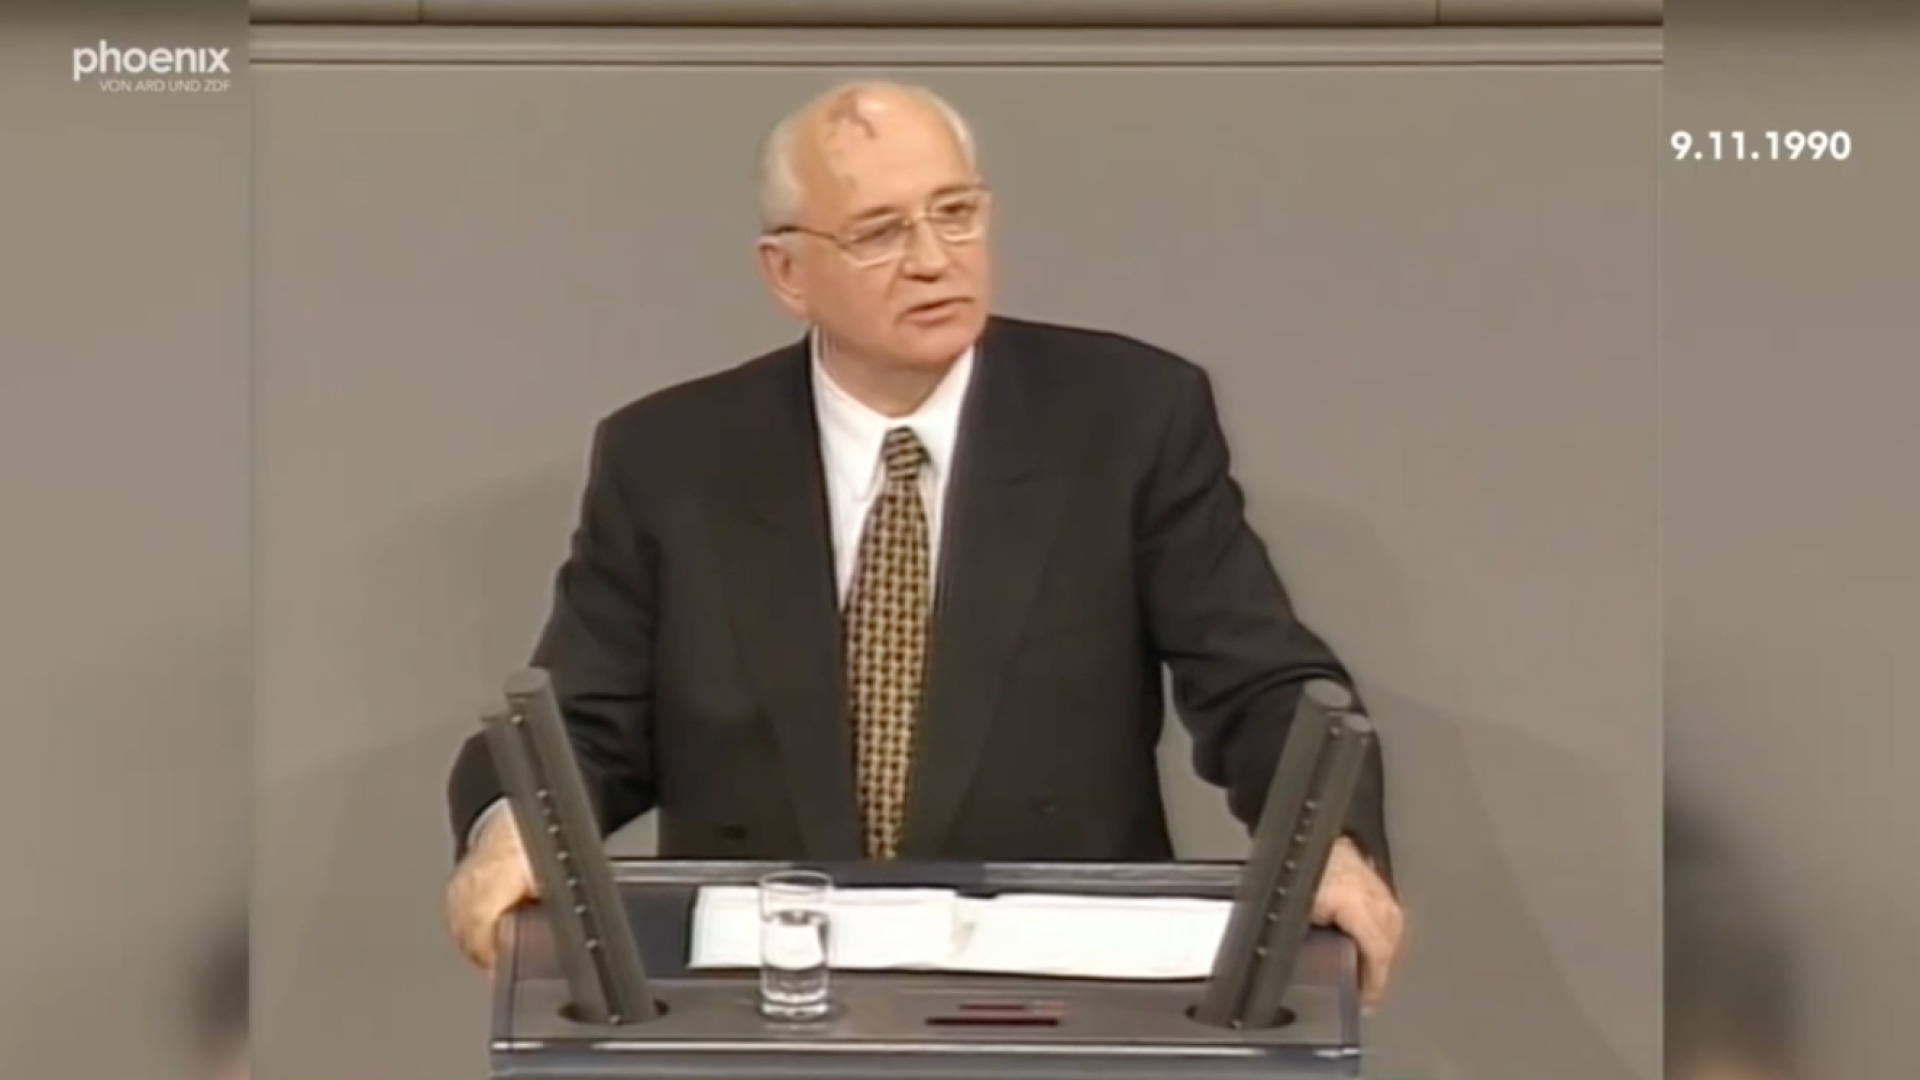 Zum Tode von Michail Gorbatschow